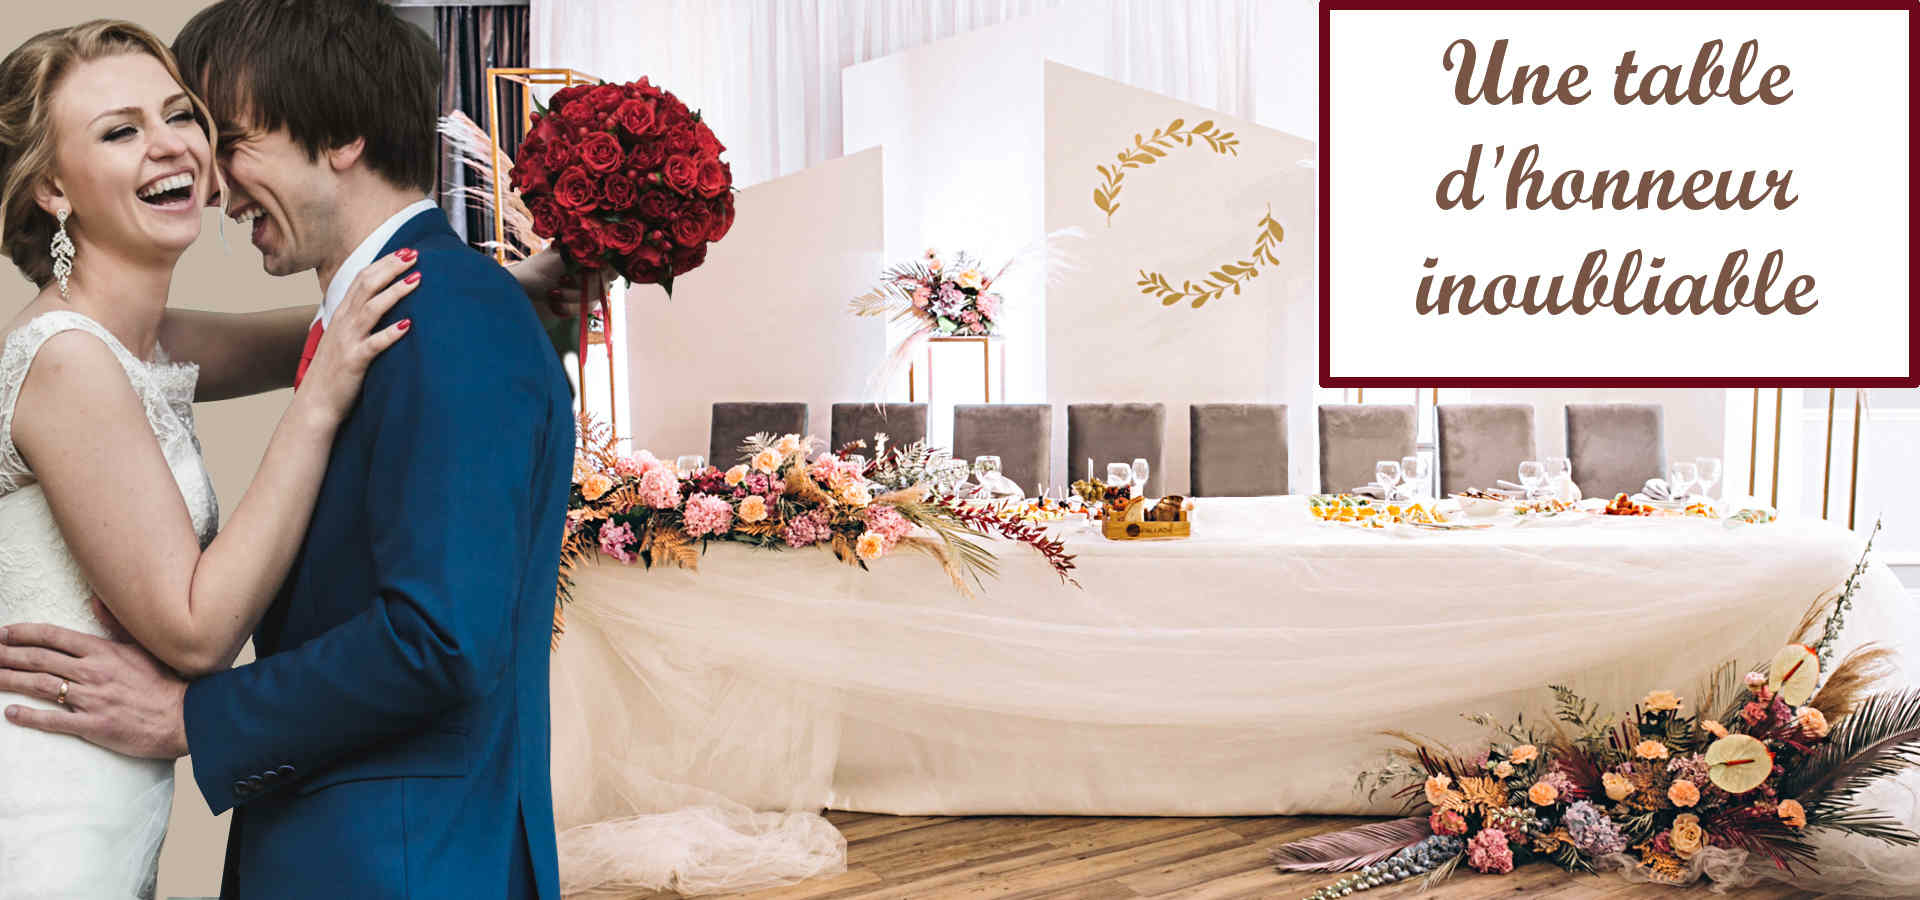 60 inspirations pour un mariage champêtre  Decoration table mariage  champetre, Table mariage champêtre, Mariage campagne